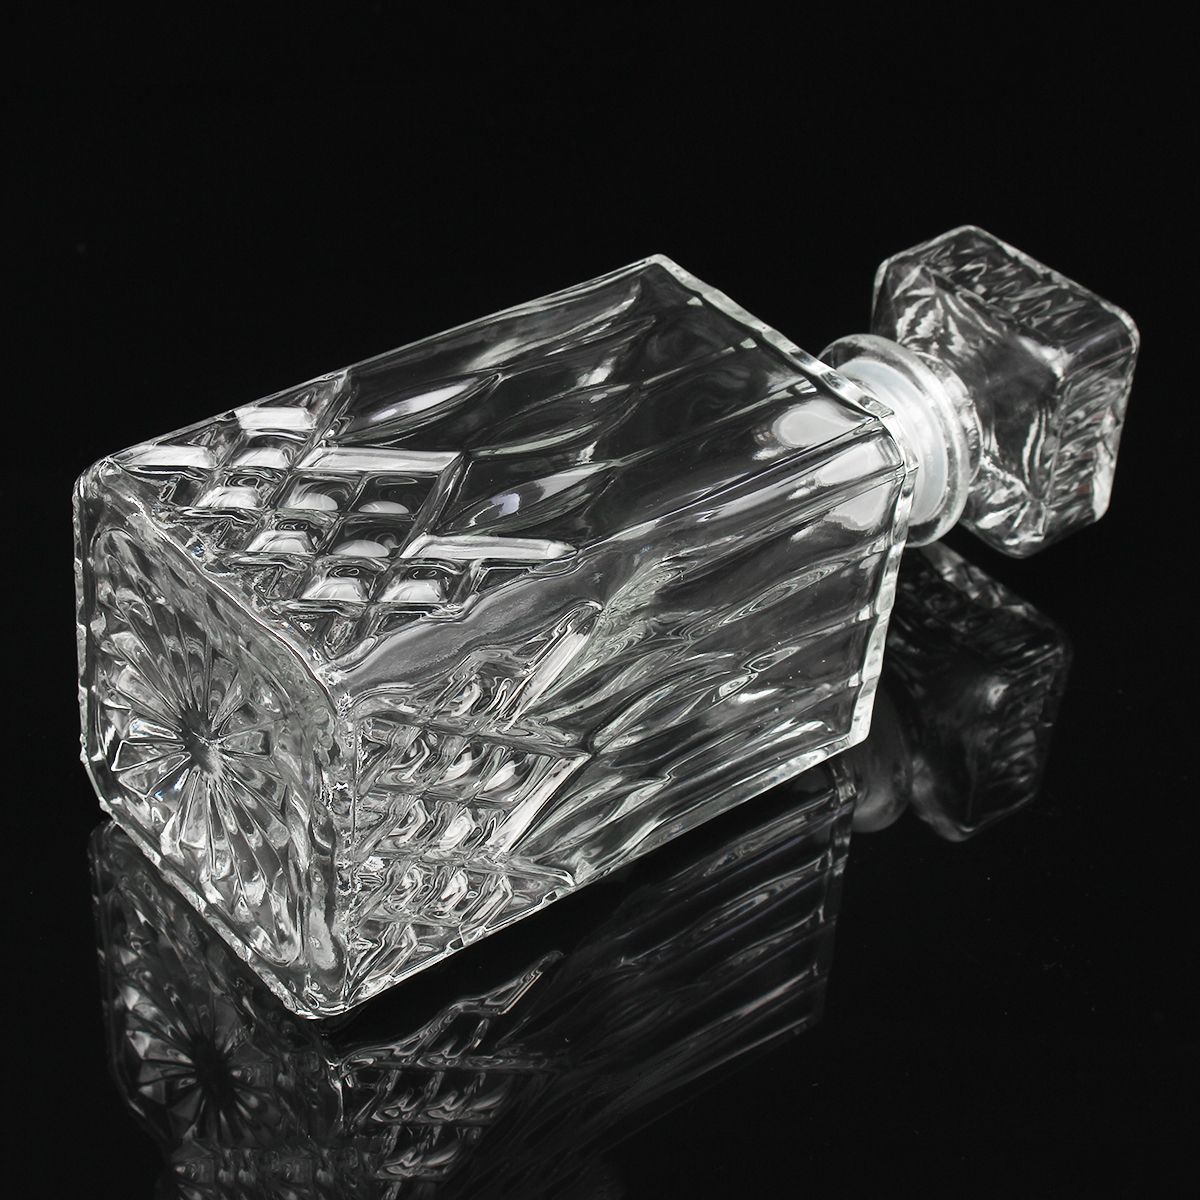 900ml-Vintage-Decanter-Glass-Liquor-Whiskey-Crystal-Bottles-Stopper-1537932